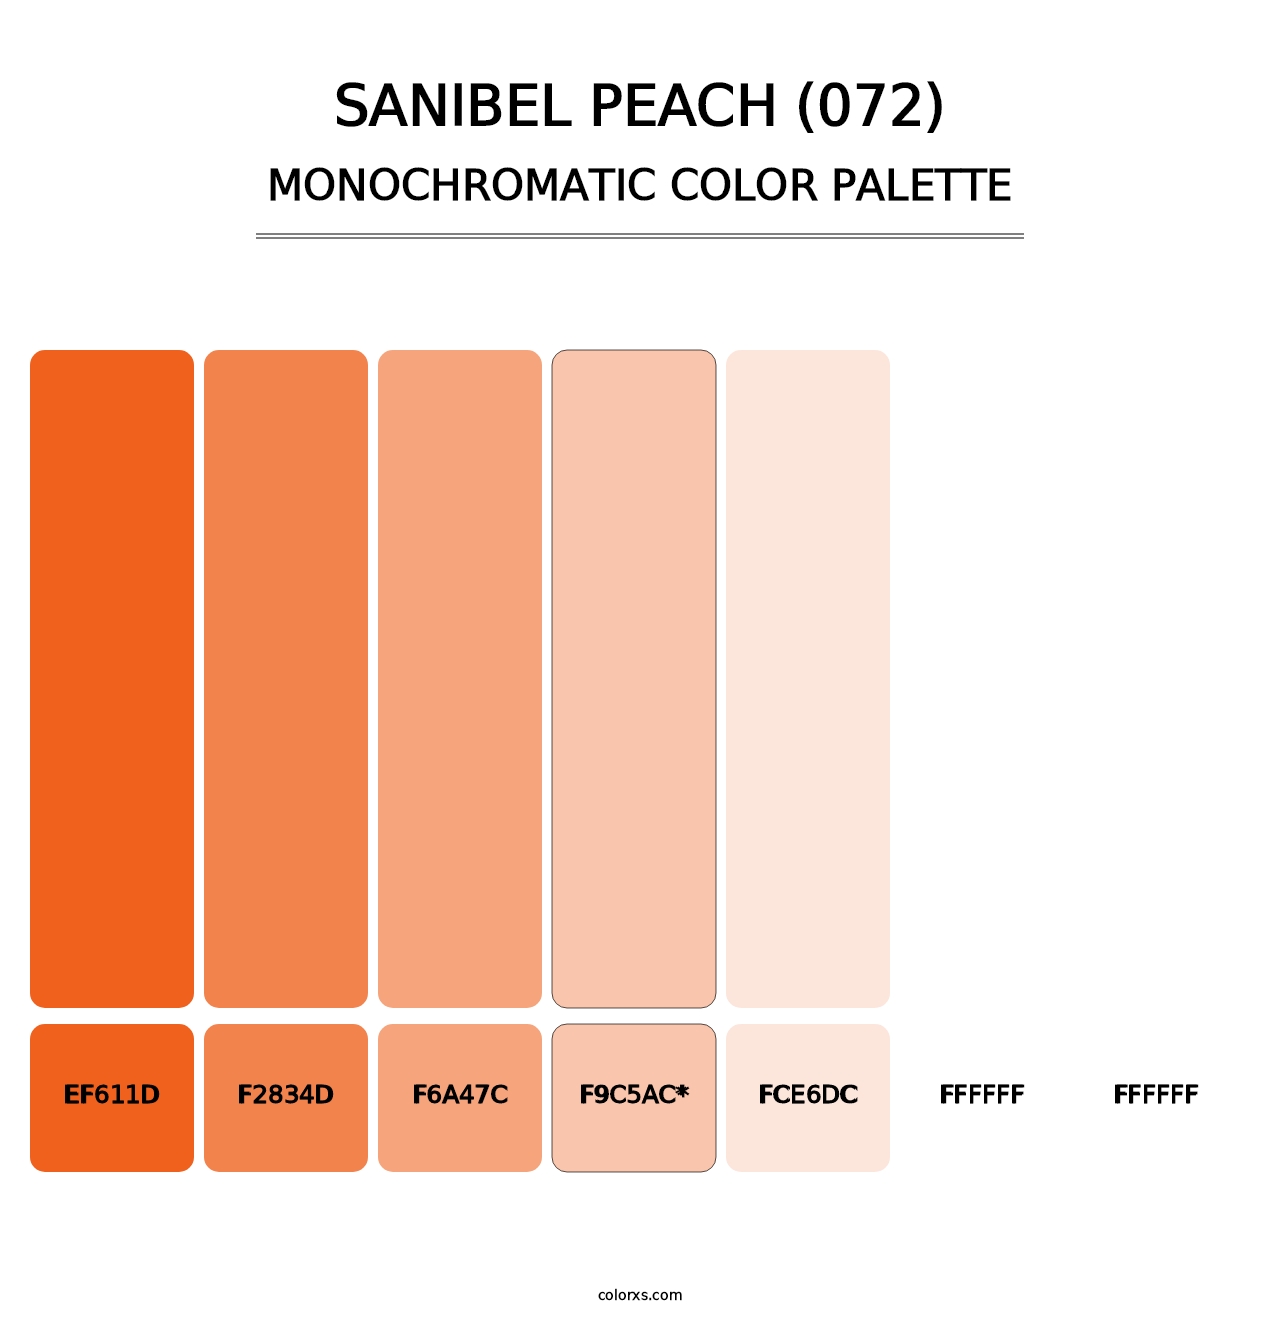 Sanibel Peach (072) - Monochromatic Color Palette